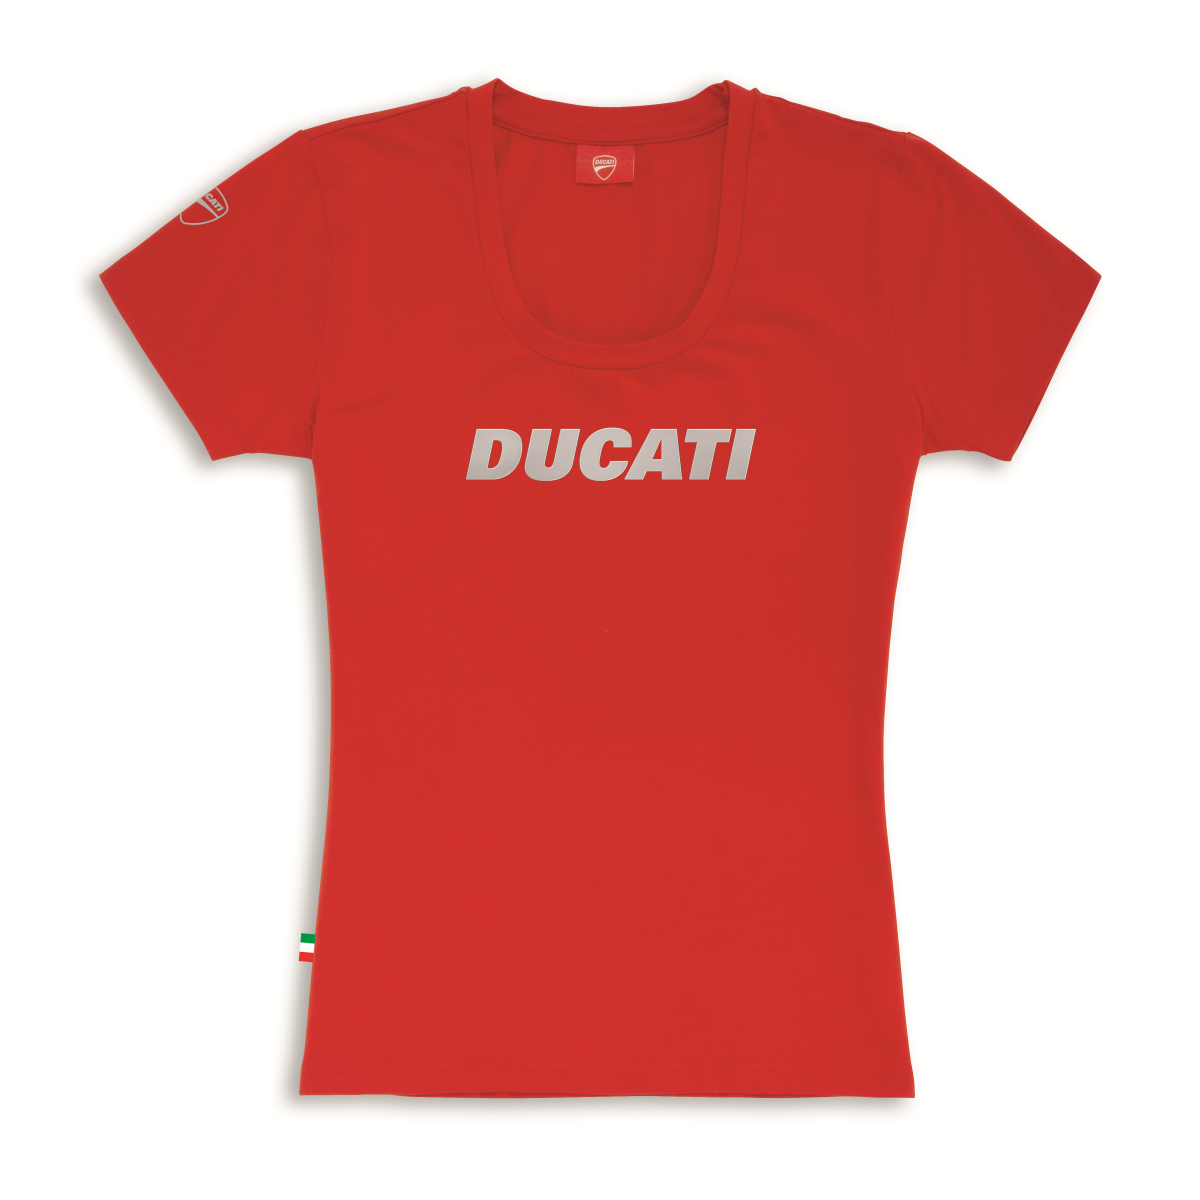 Ducati Ducatiana T-Shirt